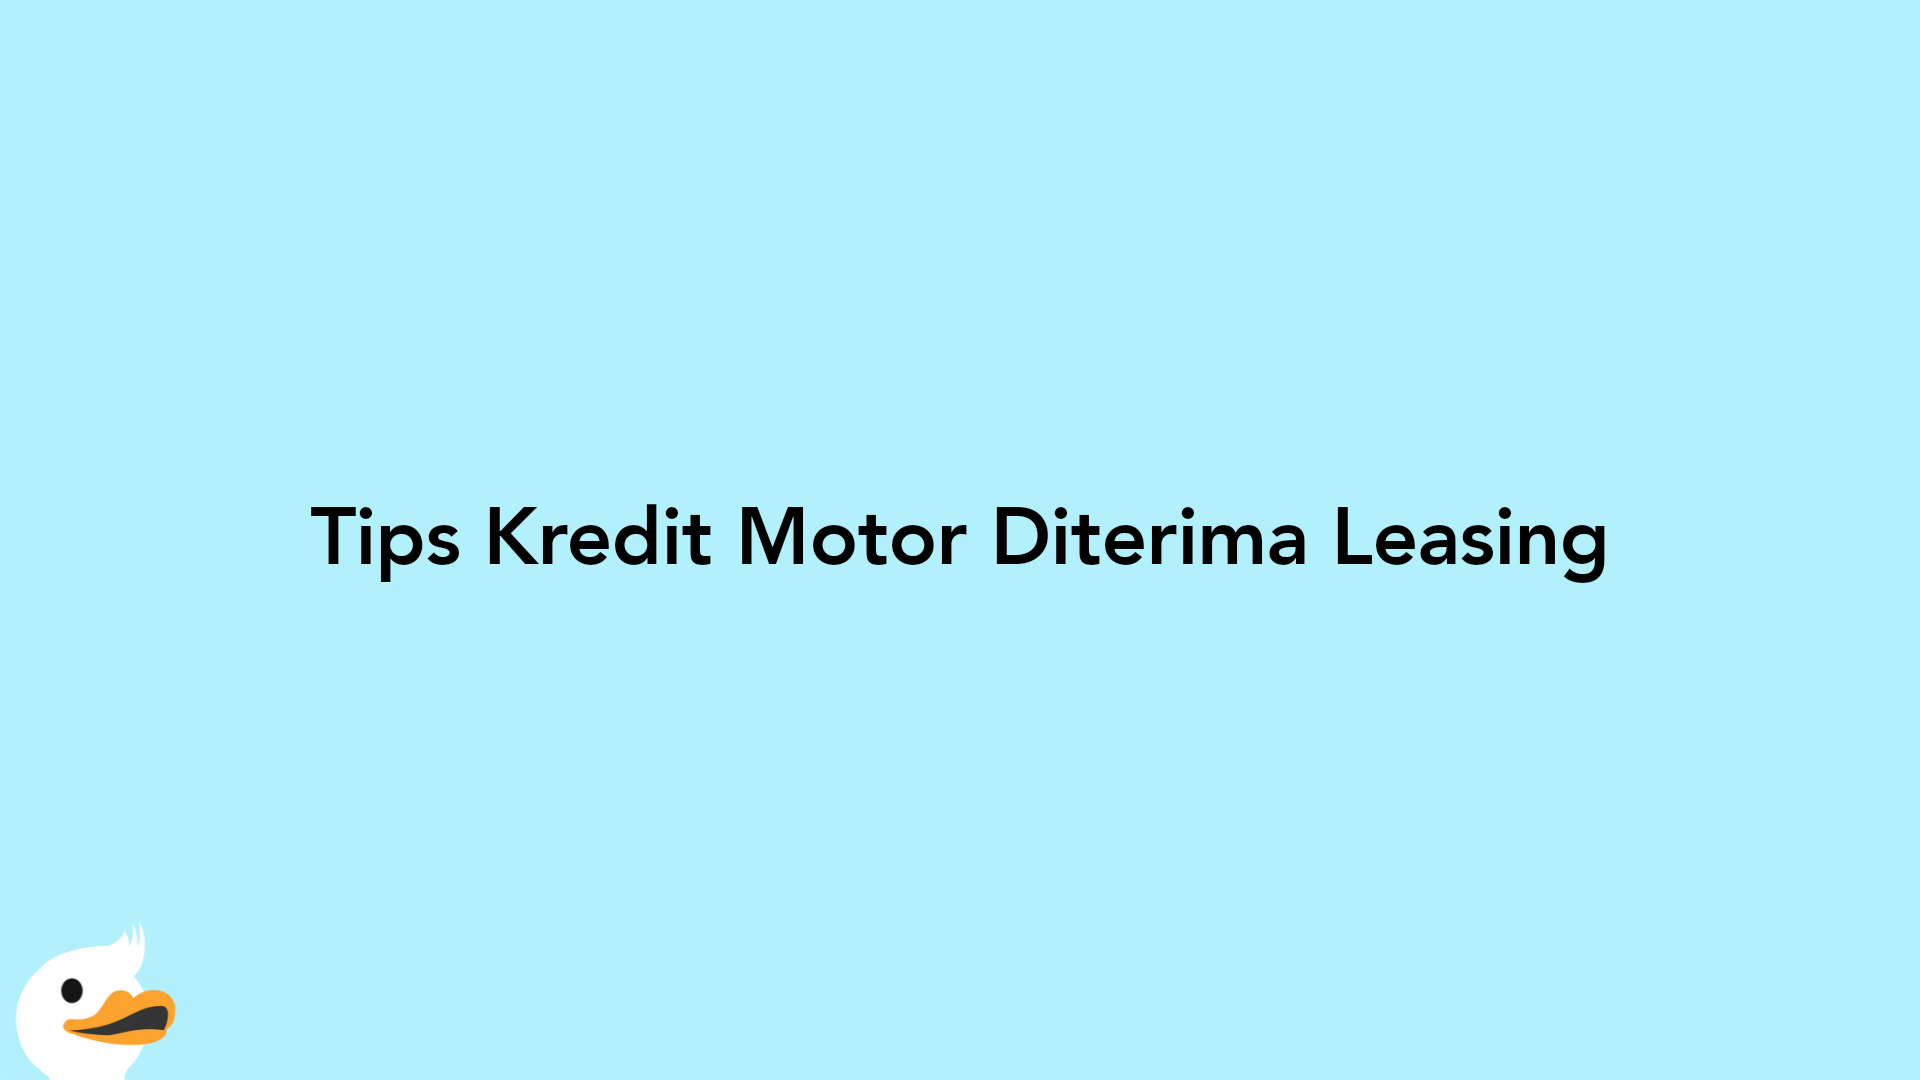 Tips Kredit Motor Diterima Leasing